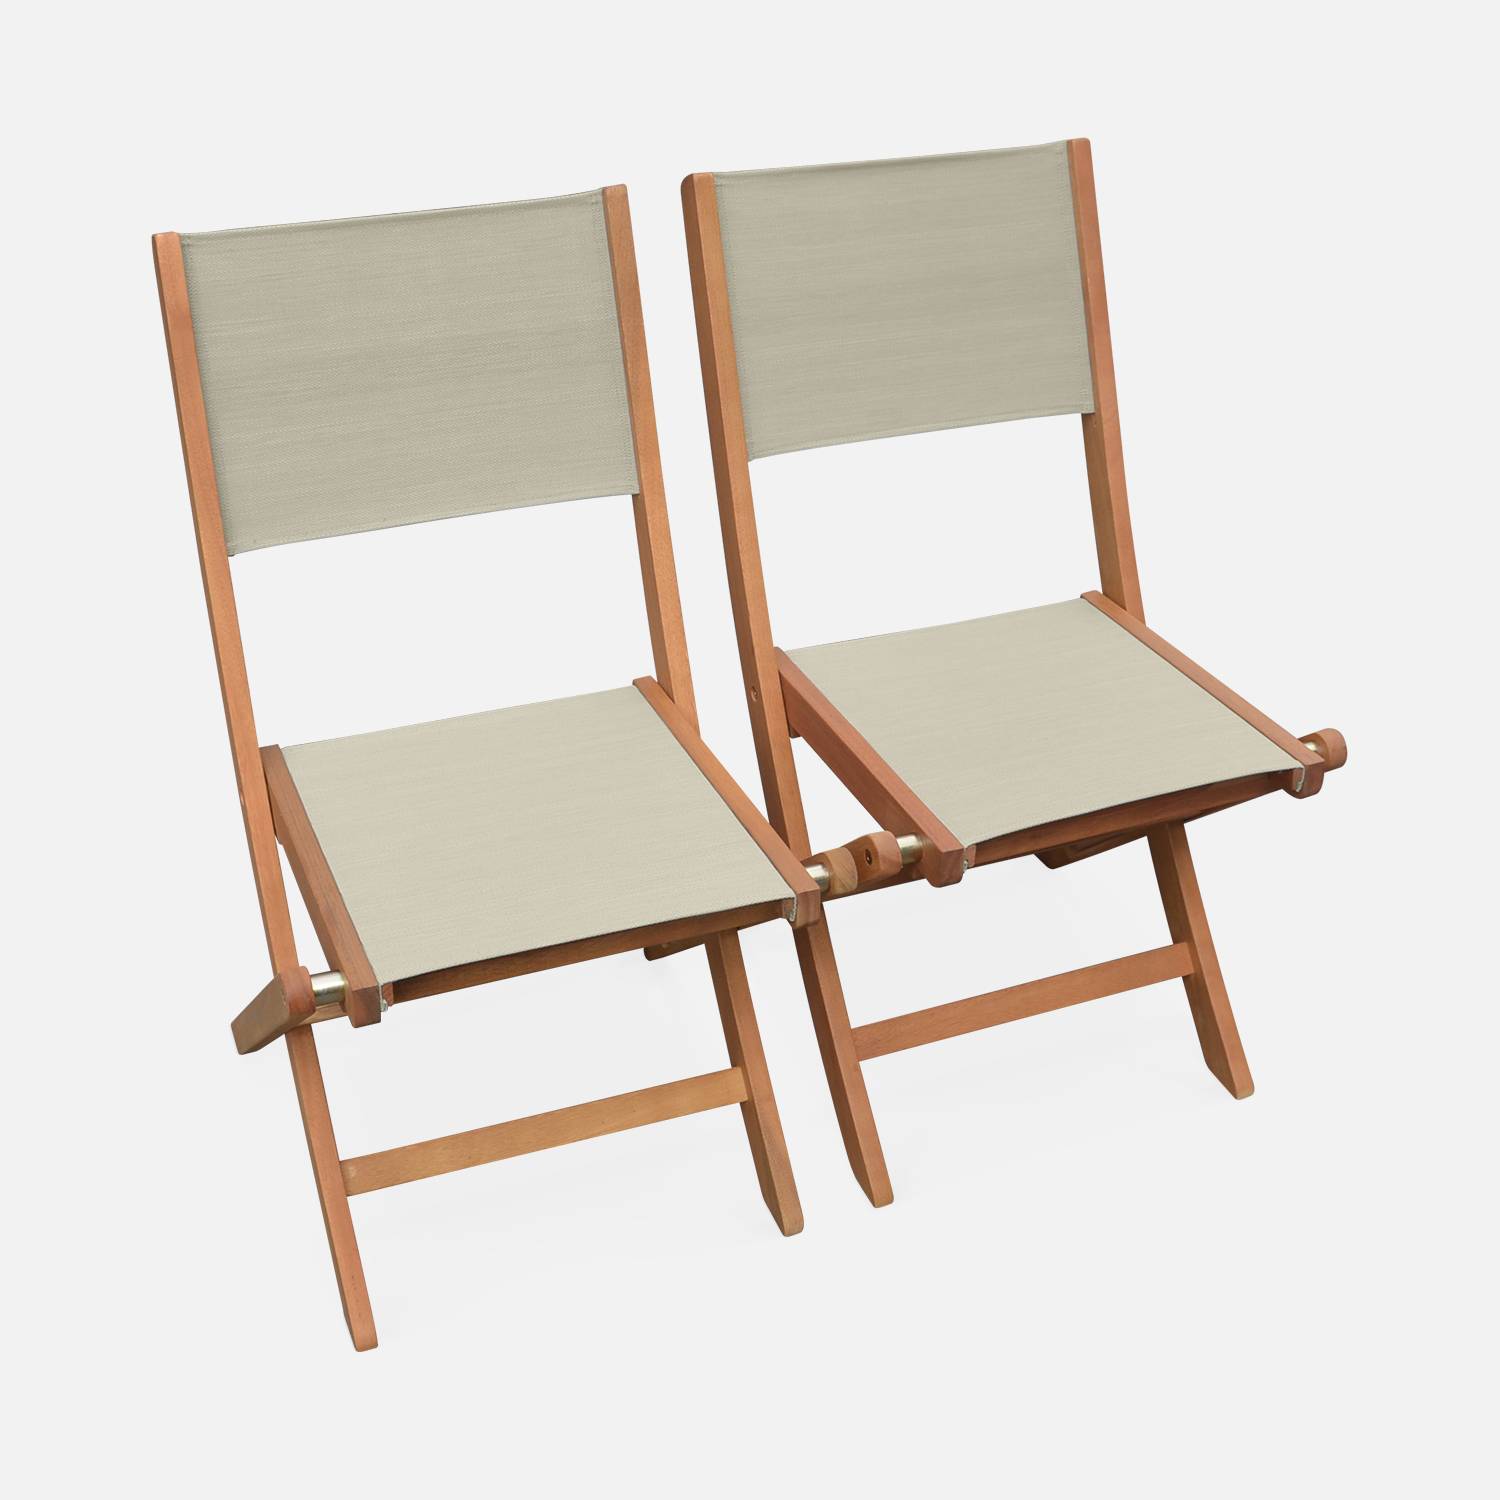 Sedie da giardino, in legno e textilene - modello: Almeria, colore: Grigio/Talpa - 2 sedie pieghevoli in legno di eucalipto FSC oliato e textilene Photo3